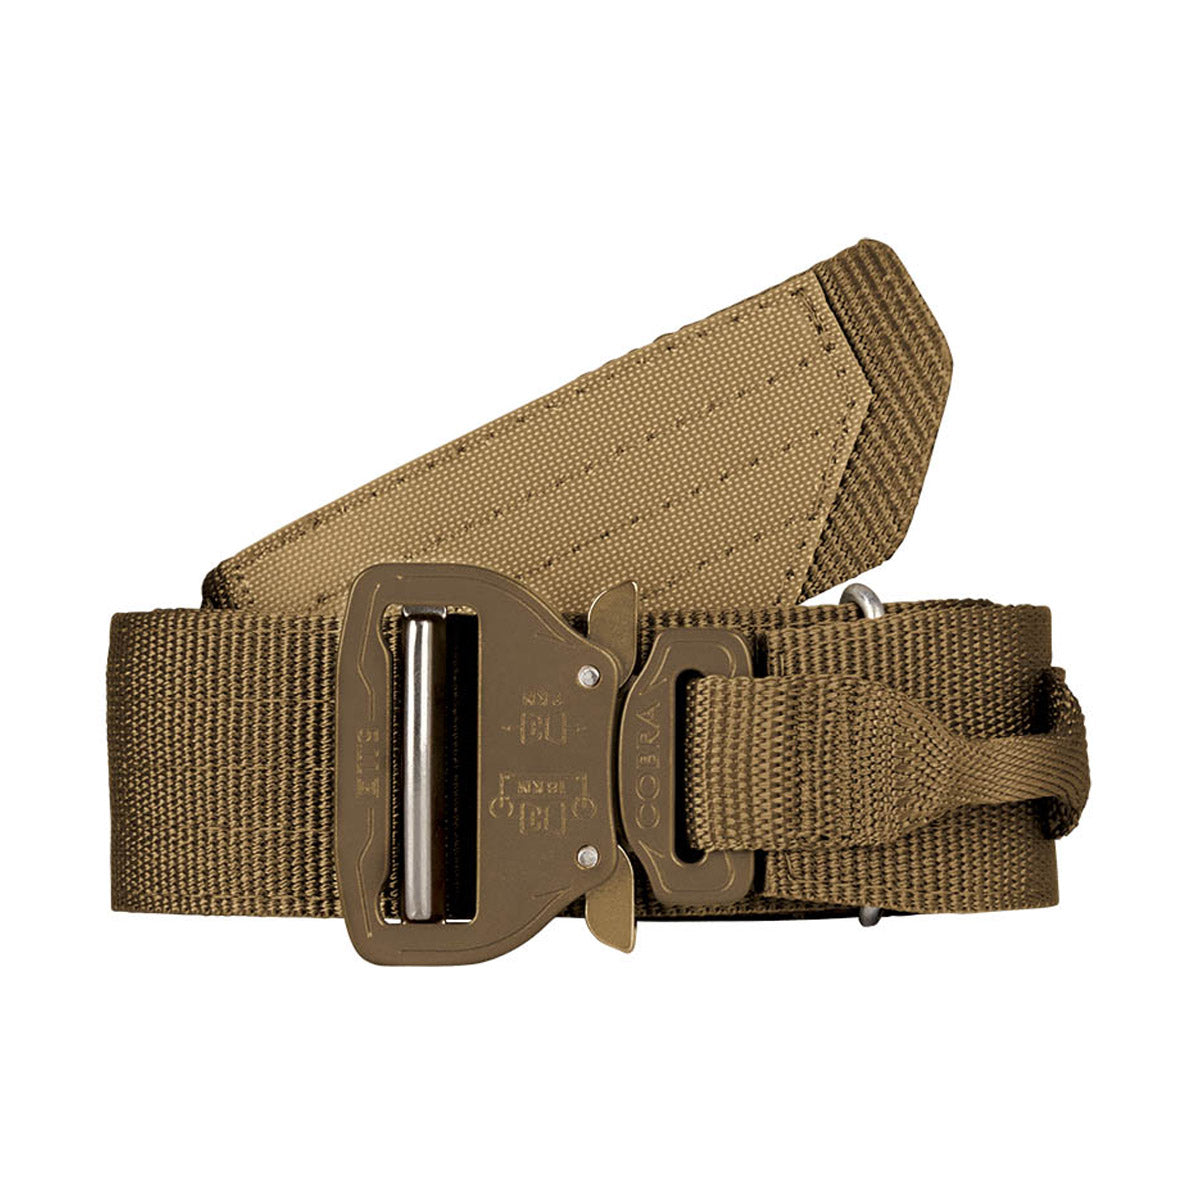 5.11 Tactical Maverick Assaulters Belt Accessories 5.11 Tactical Black Small Tactical Gear Supplier Tactical Distributors Australia